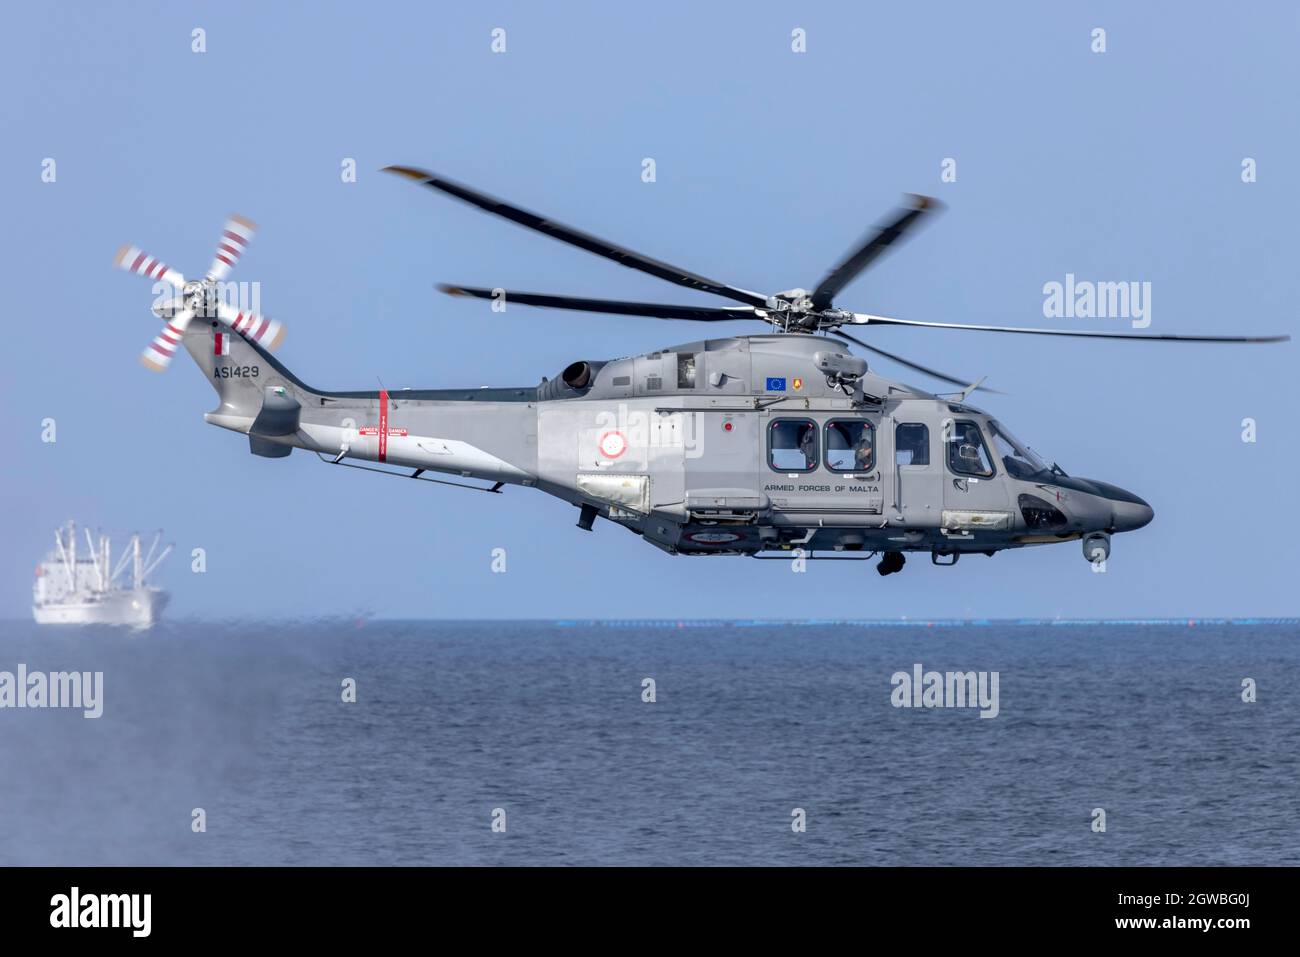 L'Aeronautica militare maltese Agusta Westland AW-139 (REG: AS1429) fa una dimostrazione di salvataggio in mare. Foto Stock